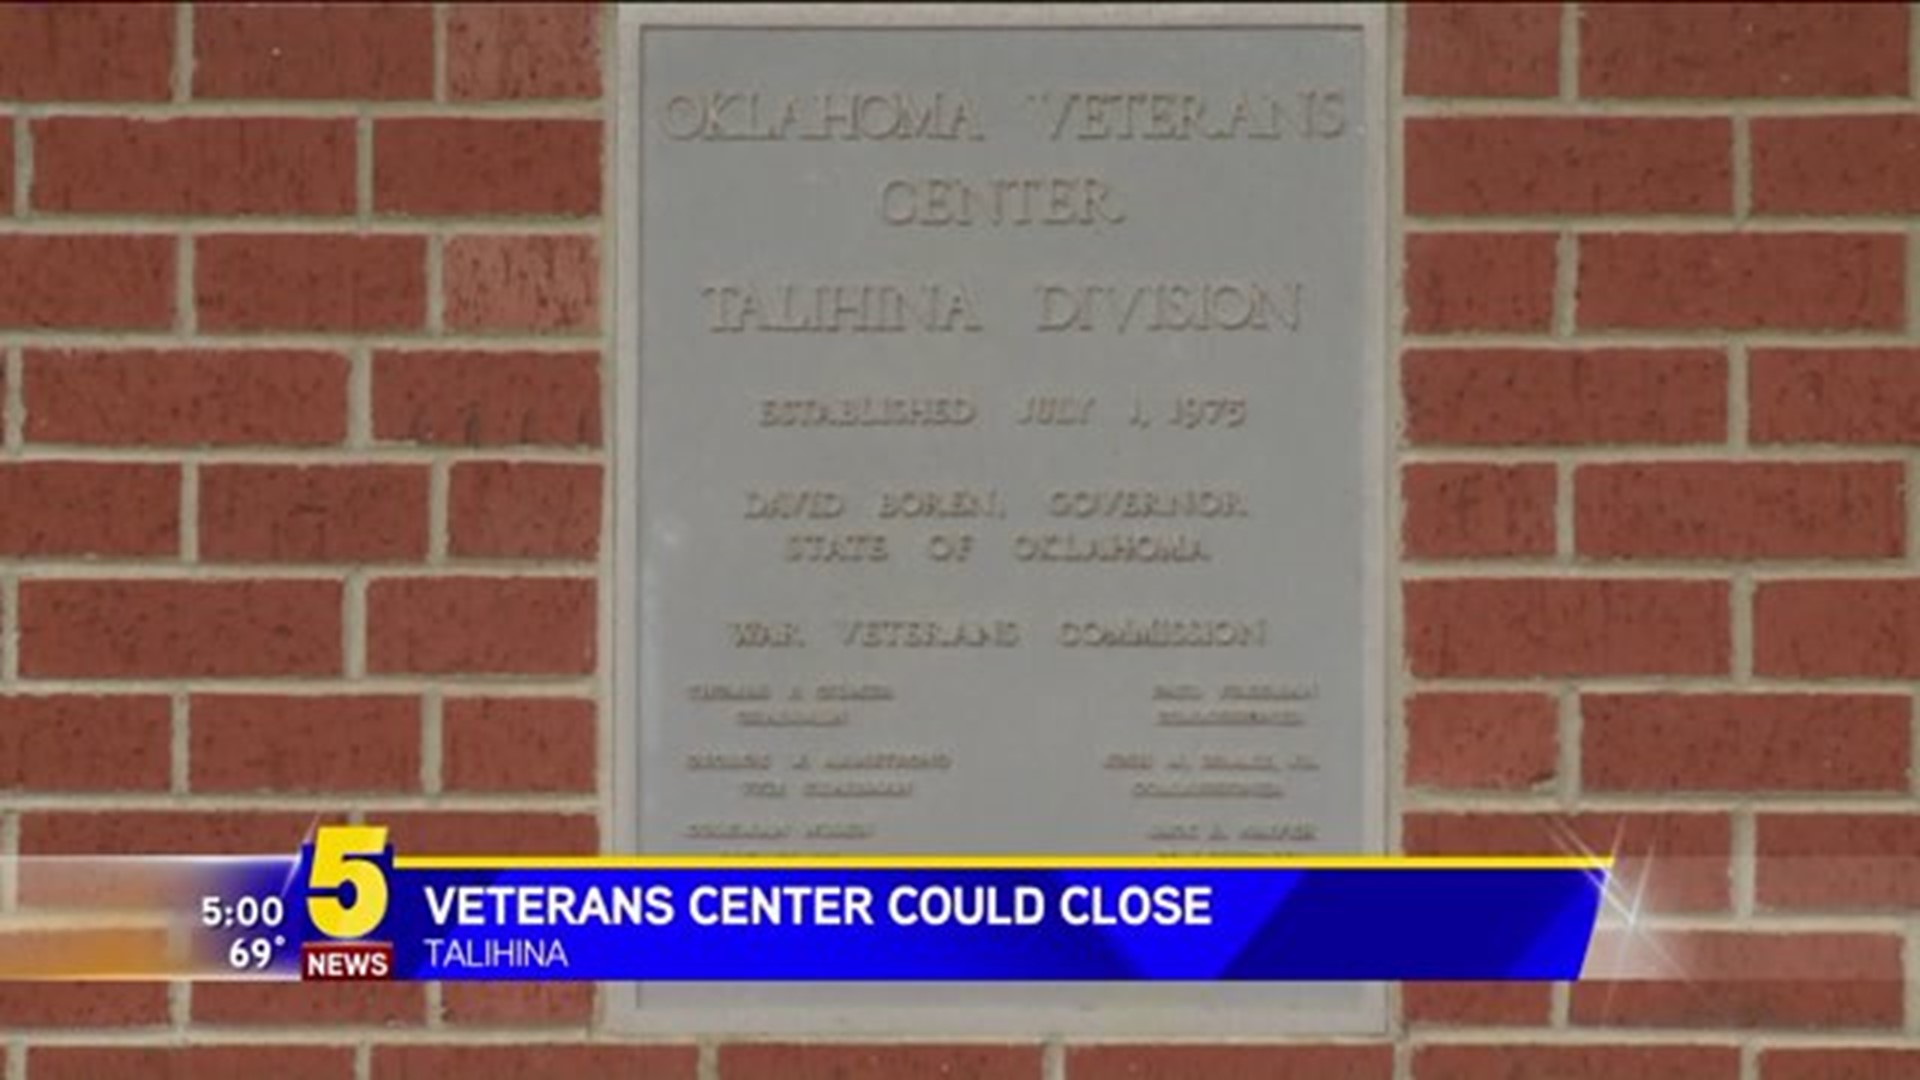 Veterans Center